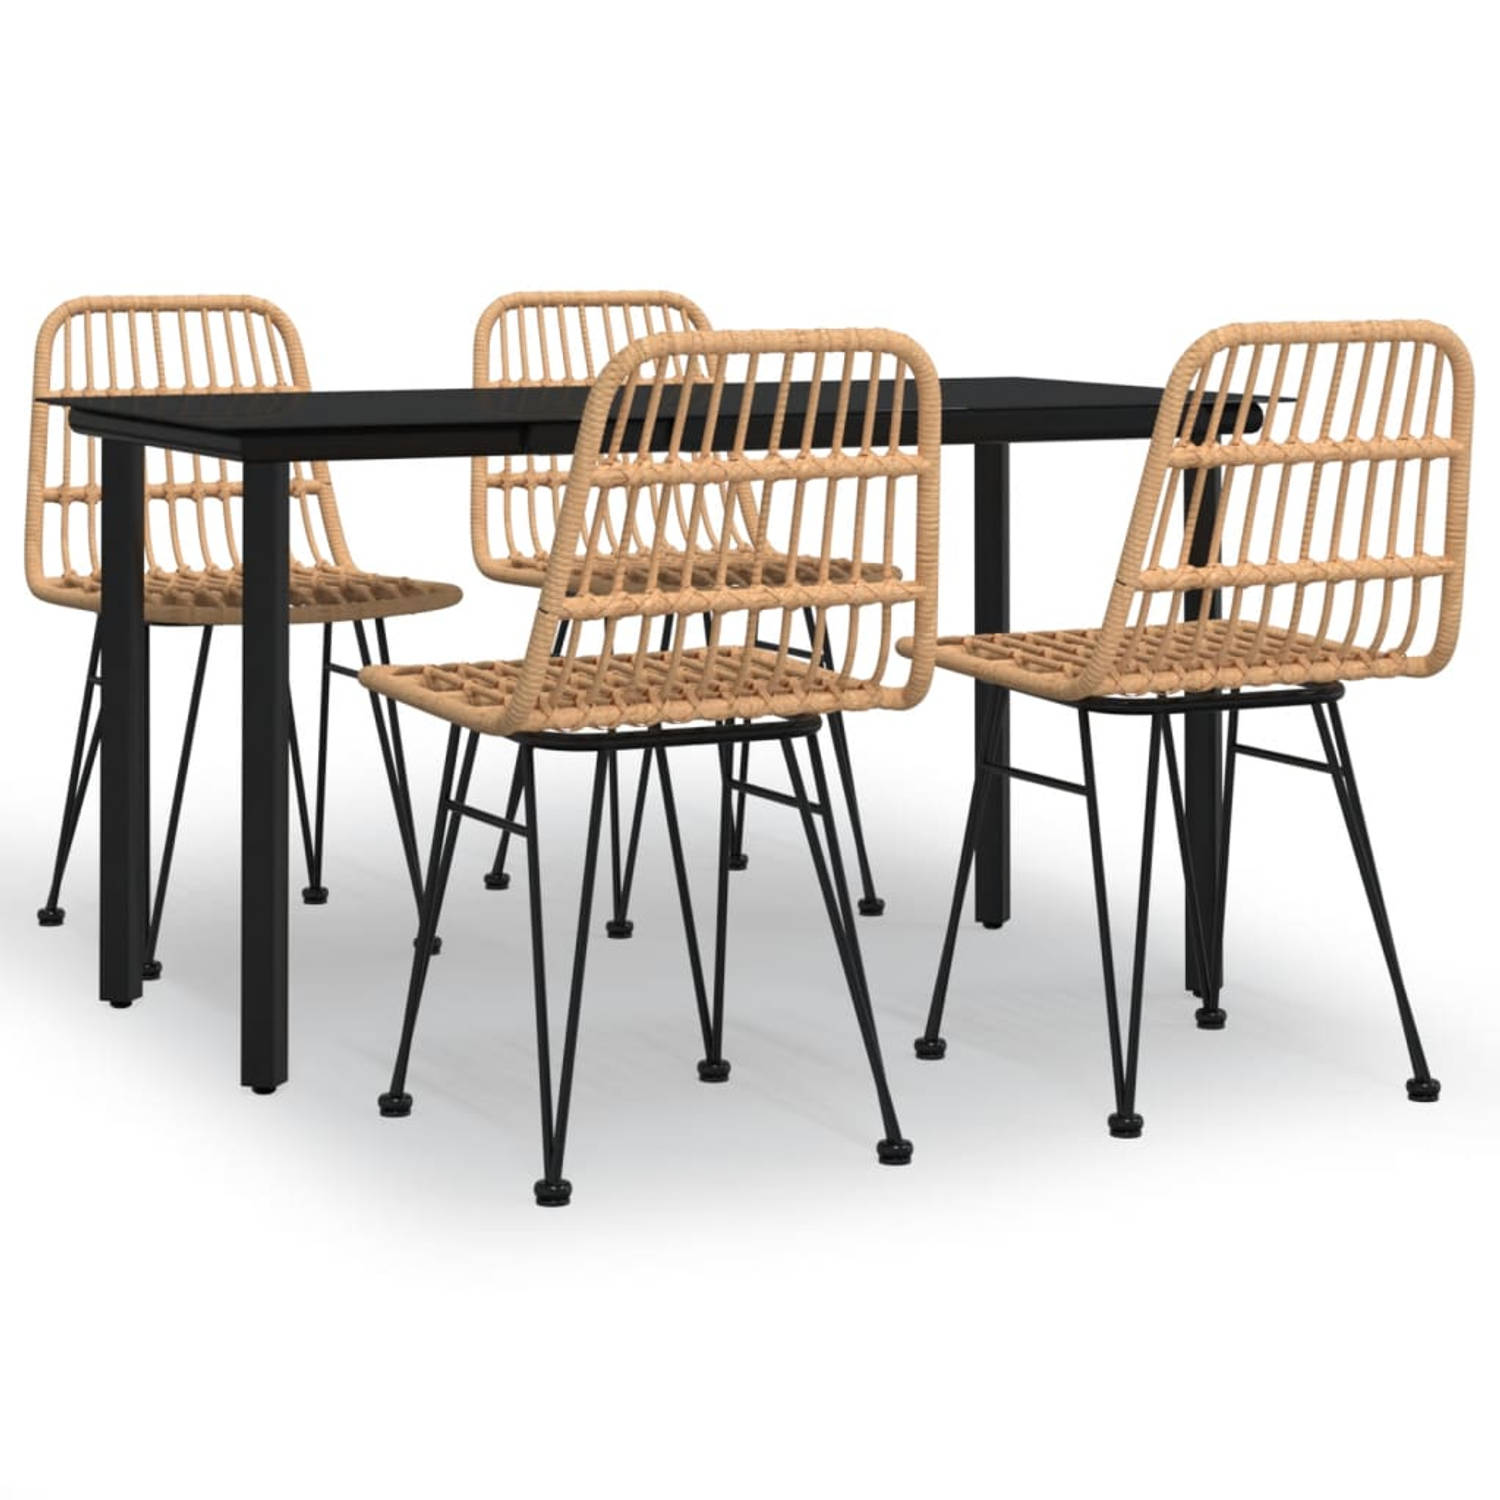 The Living Store Tuinset - PE-rattan - Duurzaam materiaal - Stabiel frame - Gehard glazen tafelblad - Comfortabele zitplaats - Praktische pootdoppen - Kleur- zwart - Afmetingen- 14